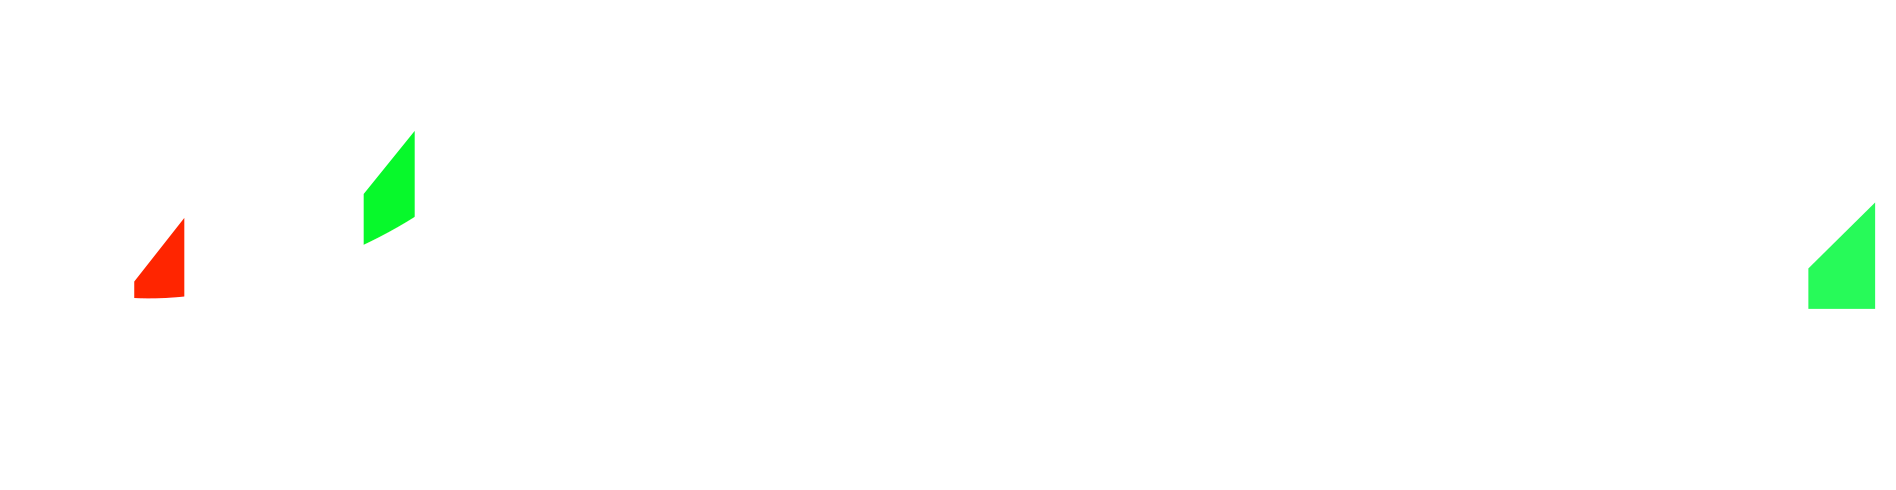 TMGM中国官方网站|TMGM官方开户|全球性金融产品交易平台